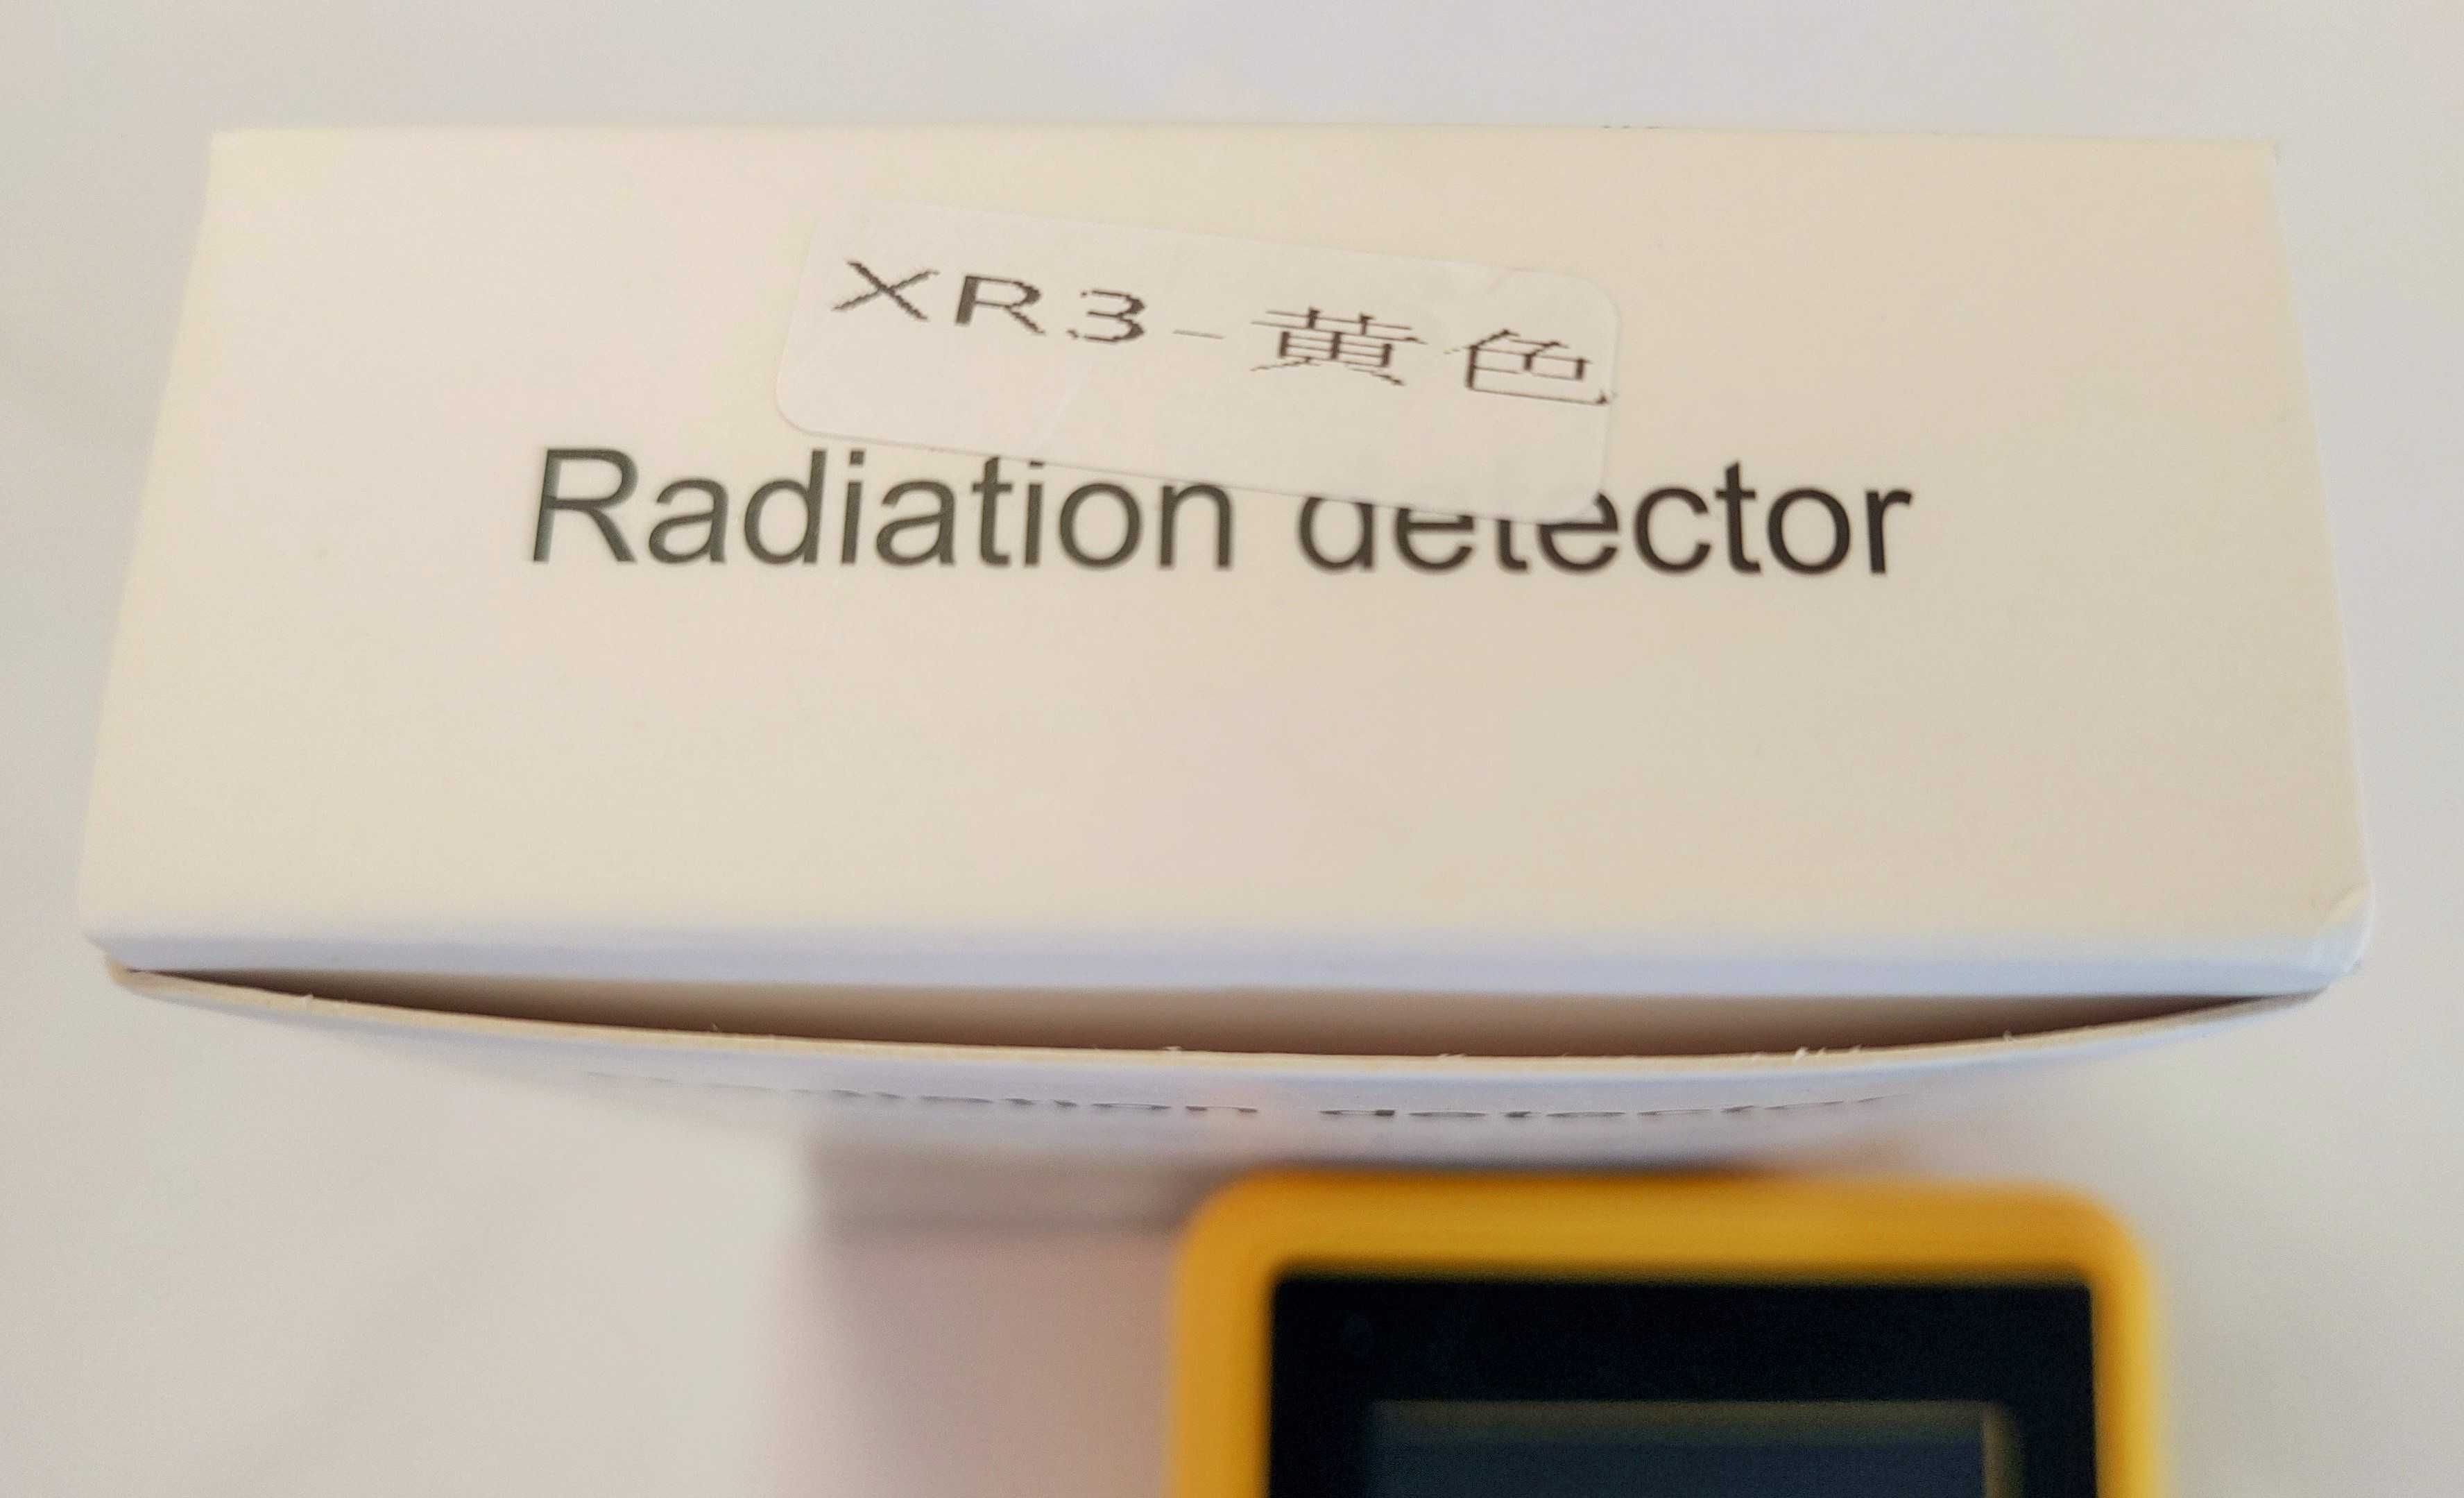 Дозиметр радиации  2 в 1 . Лічильник Гейгера
BR-9C XR-3